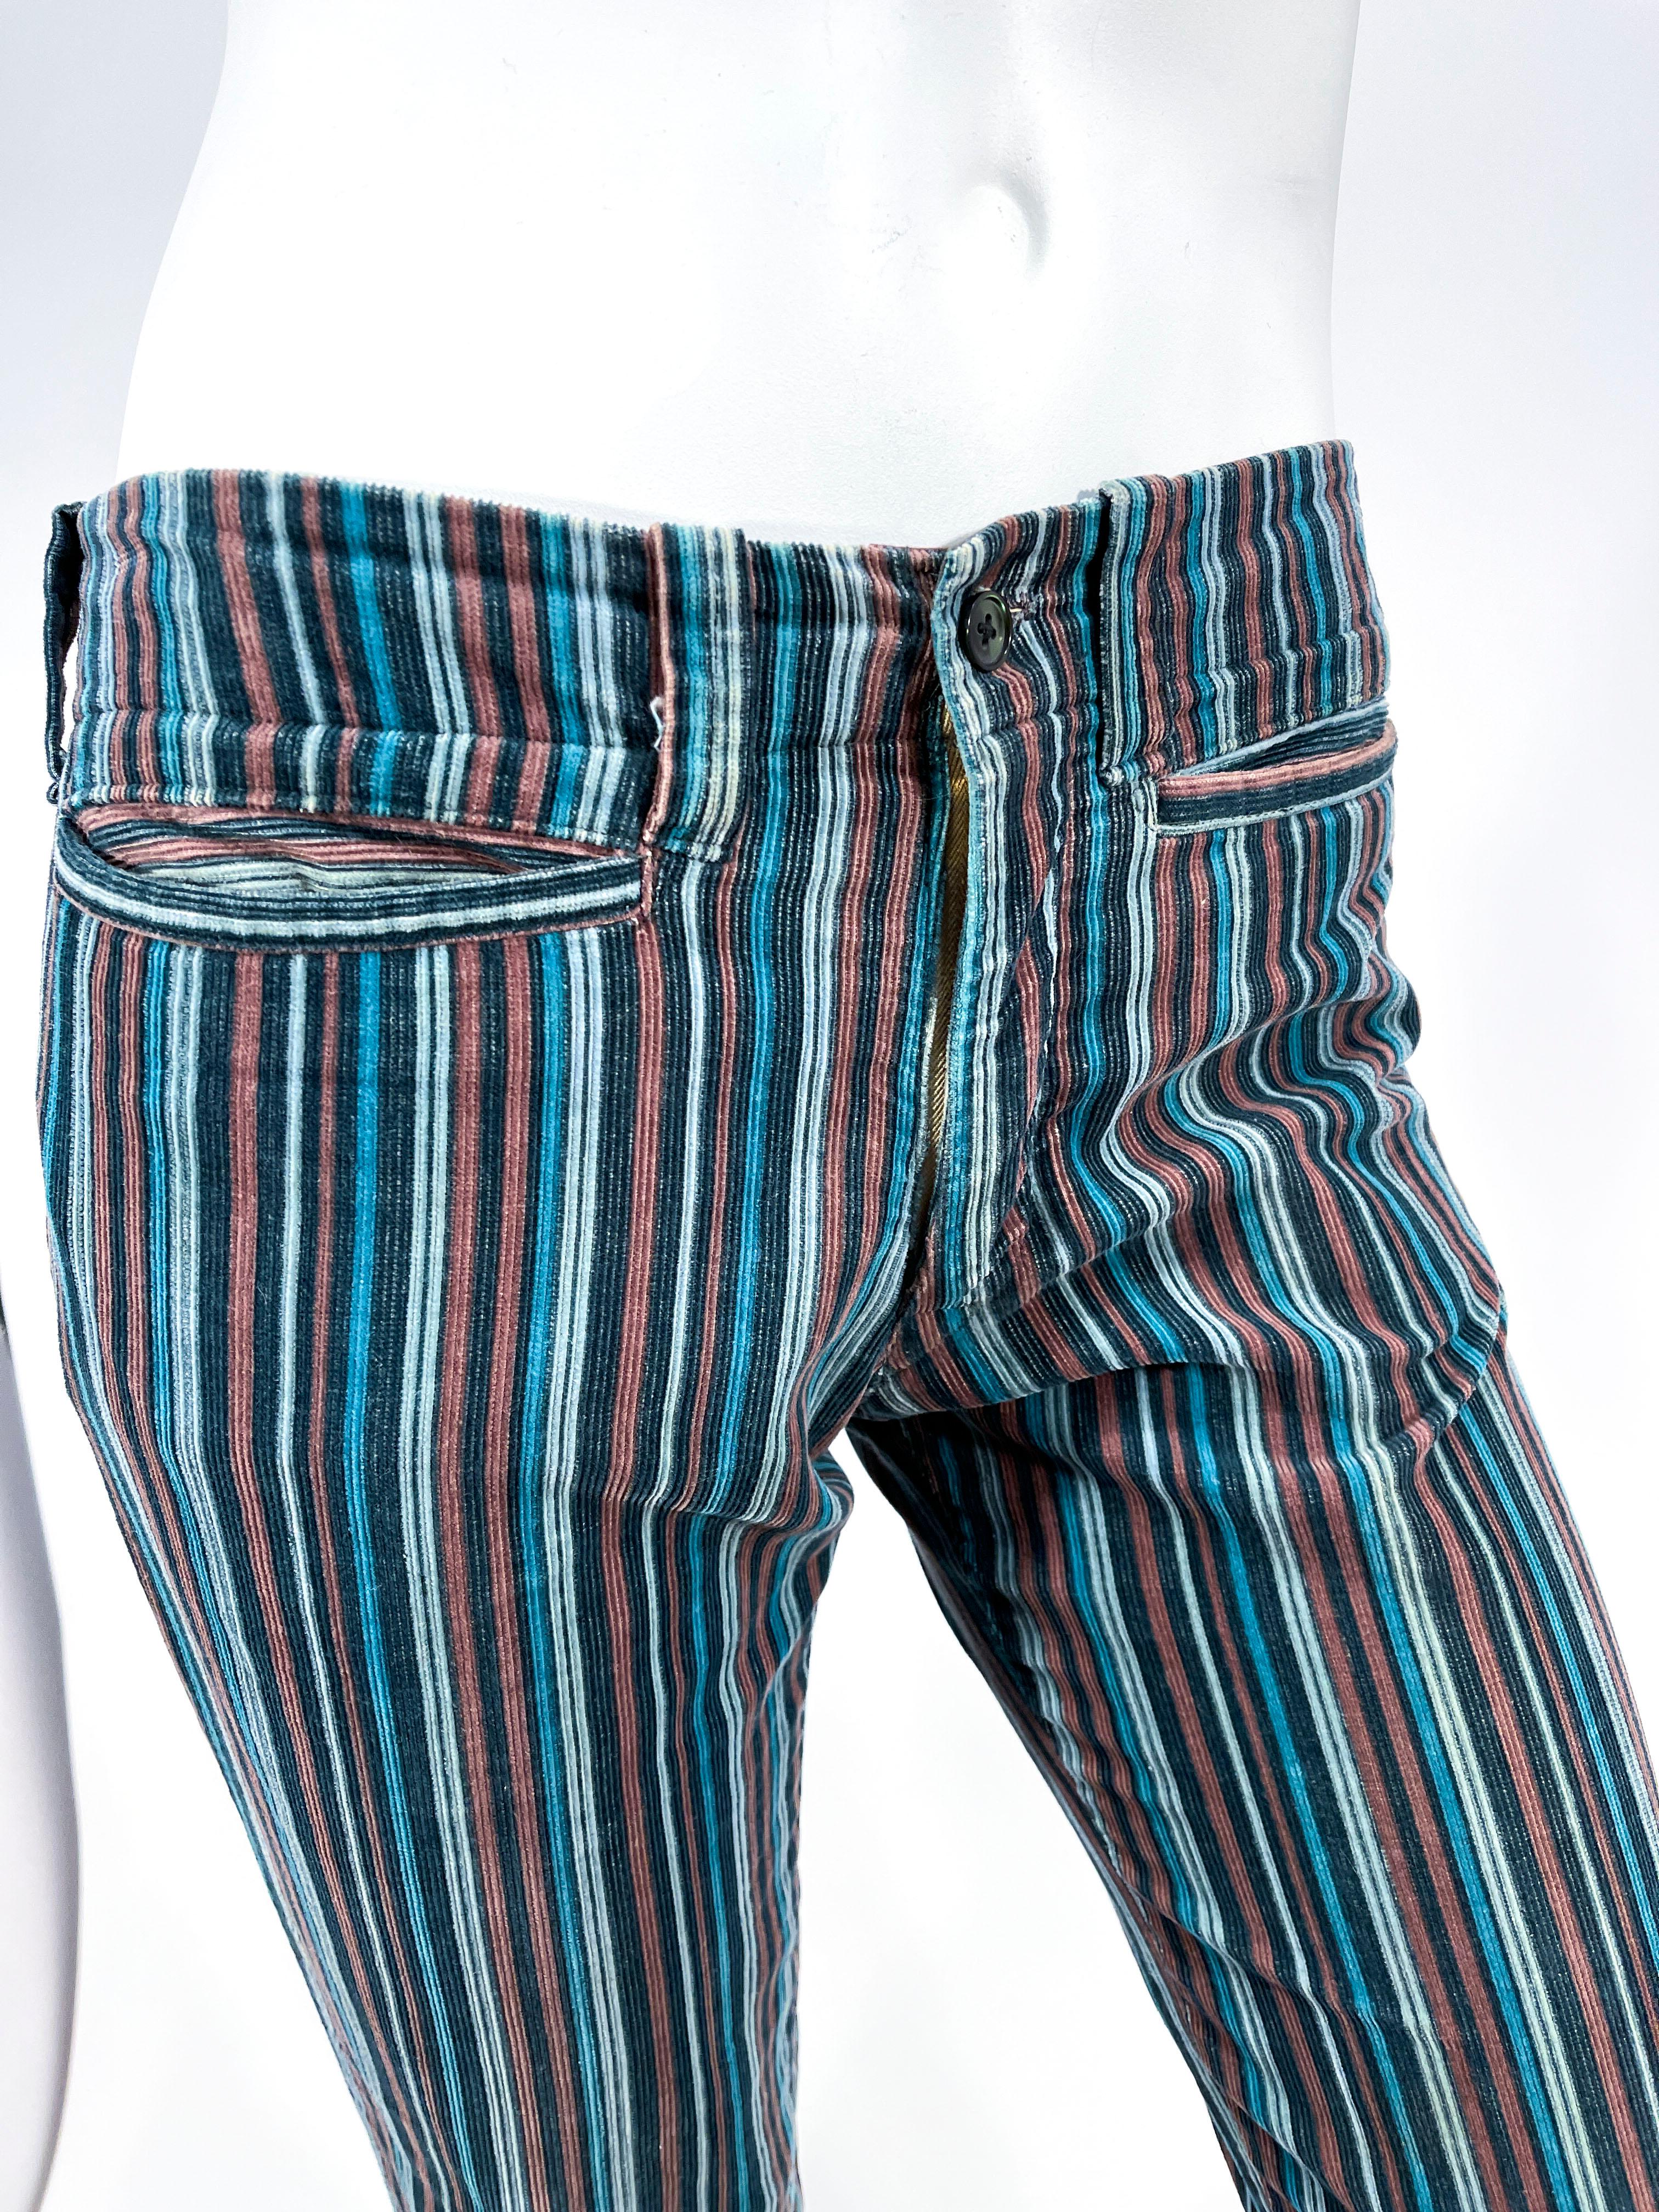 1979 Andrew Yiannakou, velours côtelé à rayures verticales dans les tons sarcelle, fauve et bleu clair. La taille basse est dotée de deux poches sur le devant, de passants de ceinture assortis et d'une braguette zippée en métal. Notez que ces